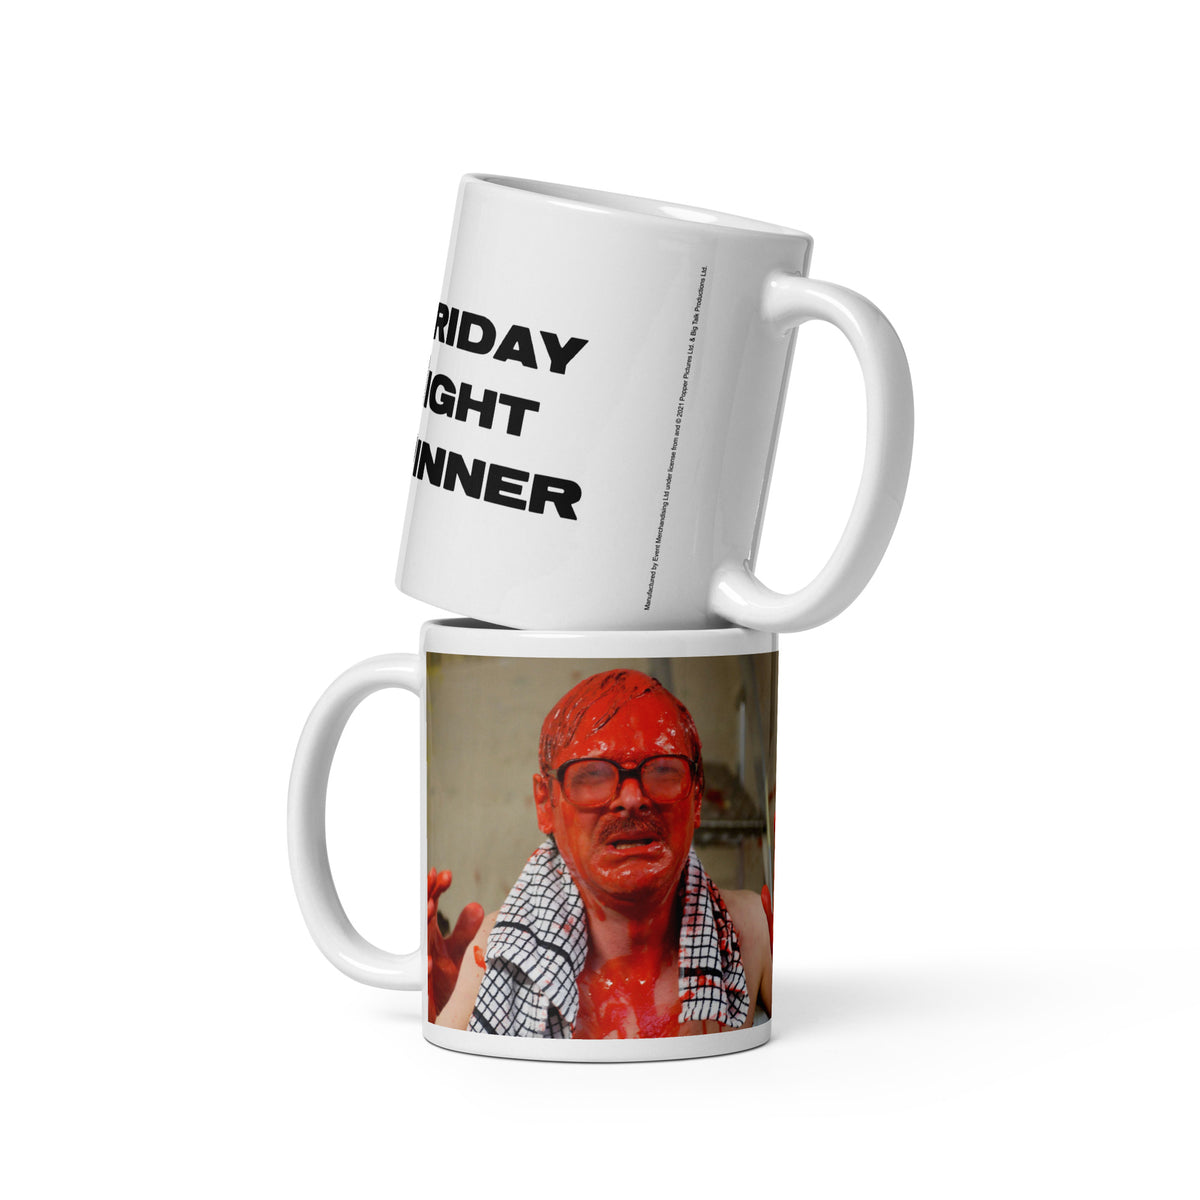 Series 2 Red Jim White Mug